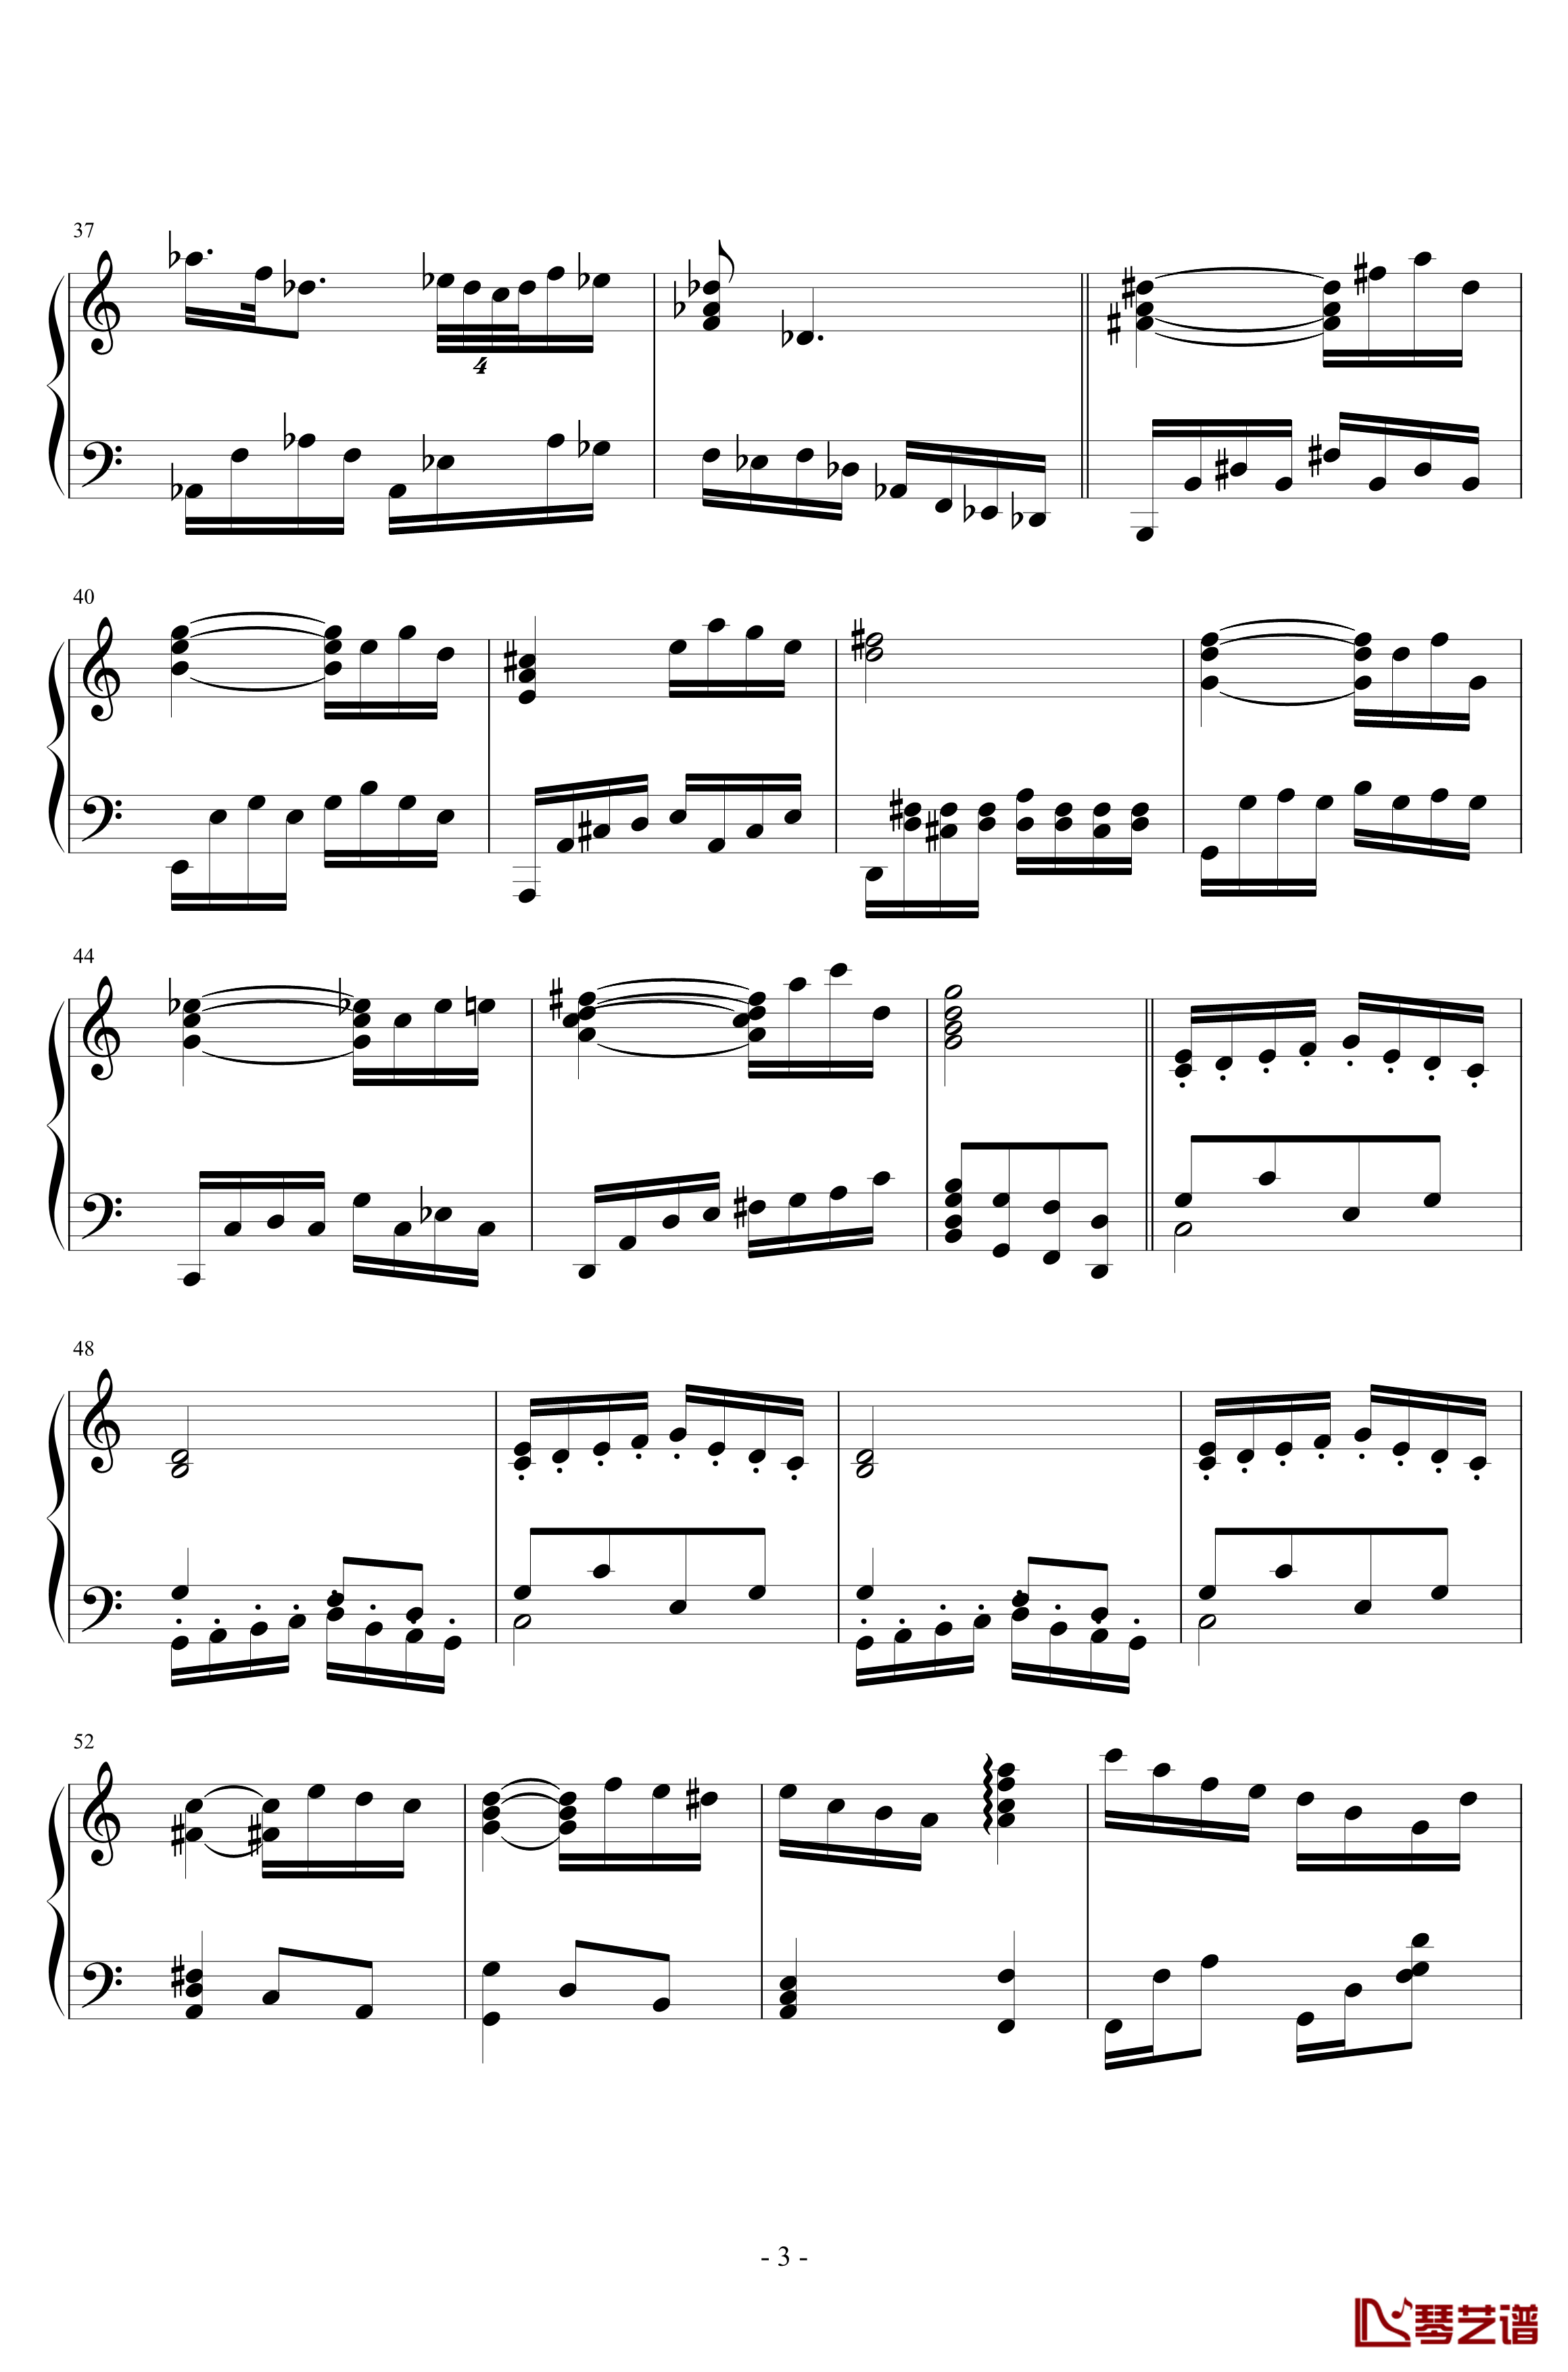 第三钢琴奏鸣曲第二乐章钢琴谱-nzh19343